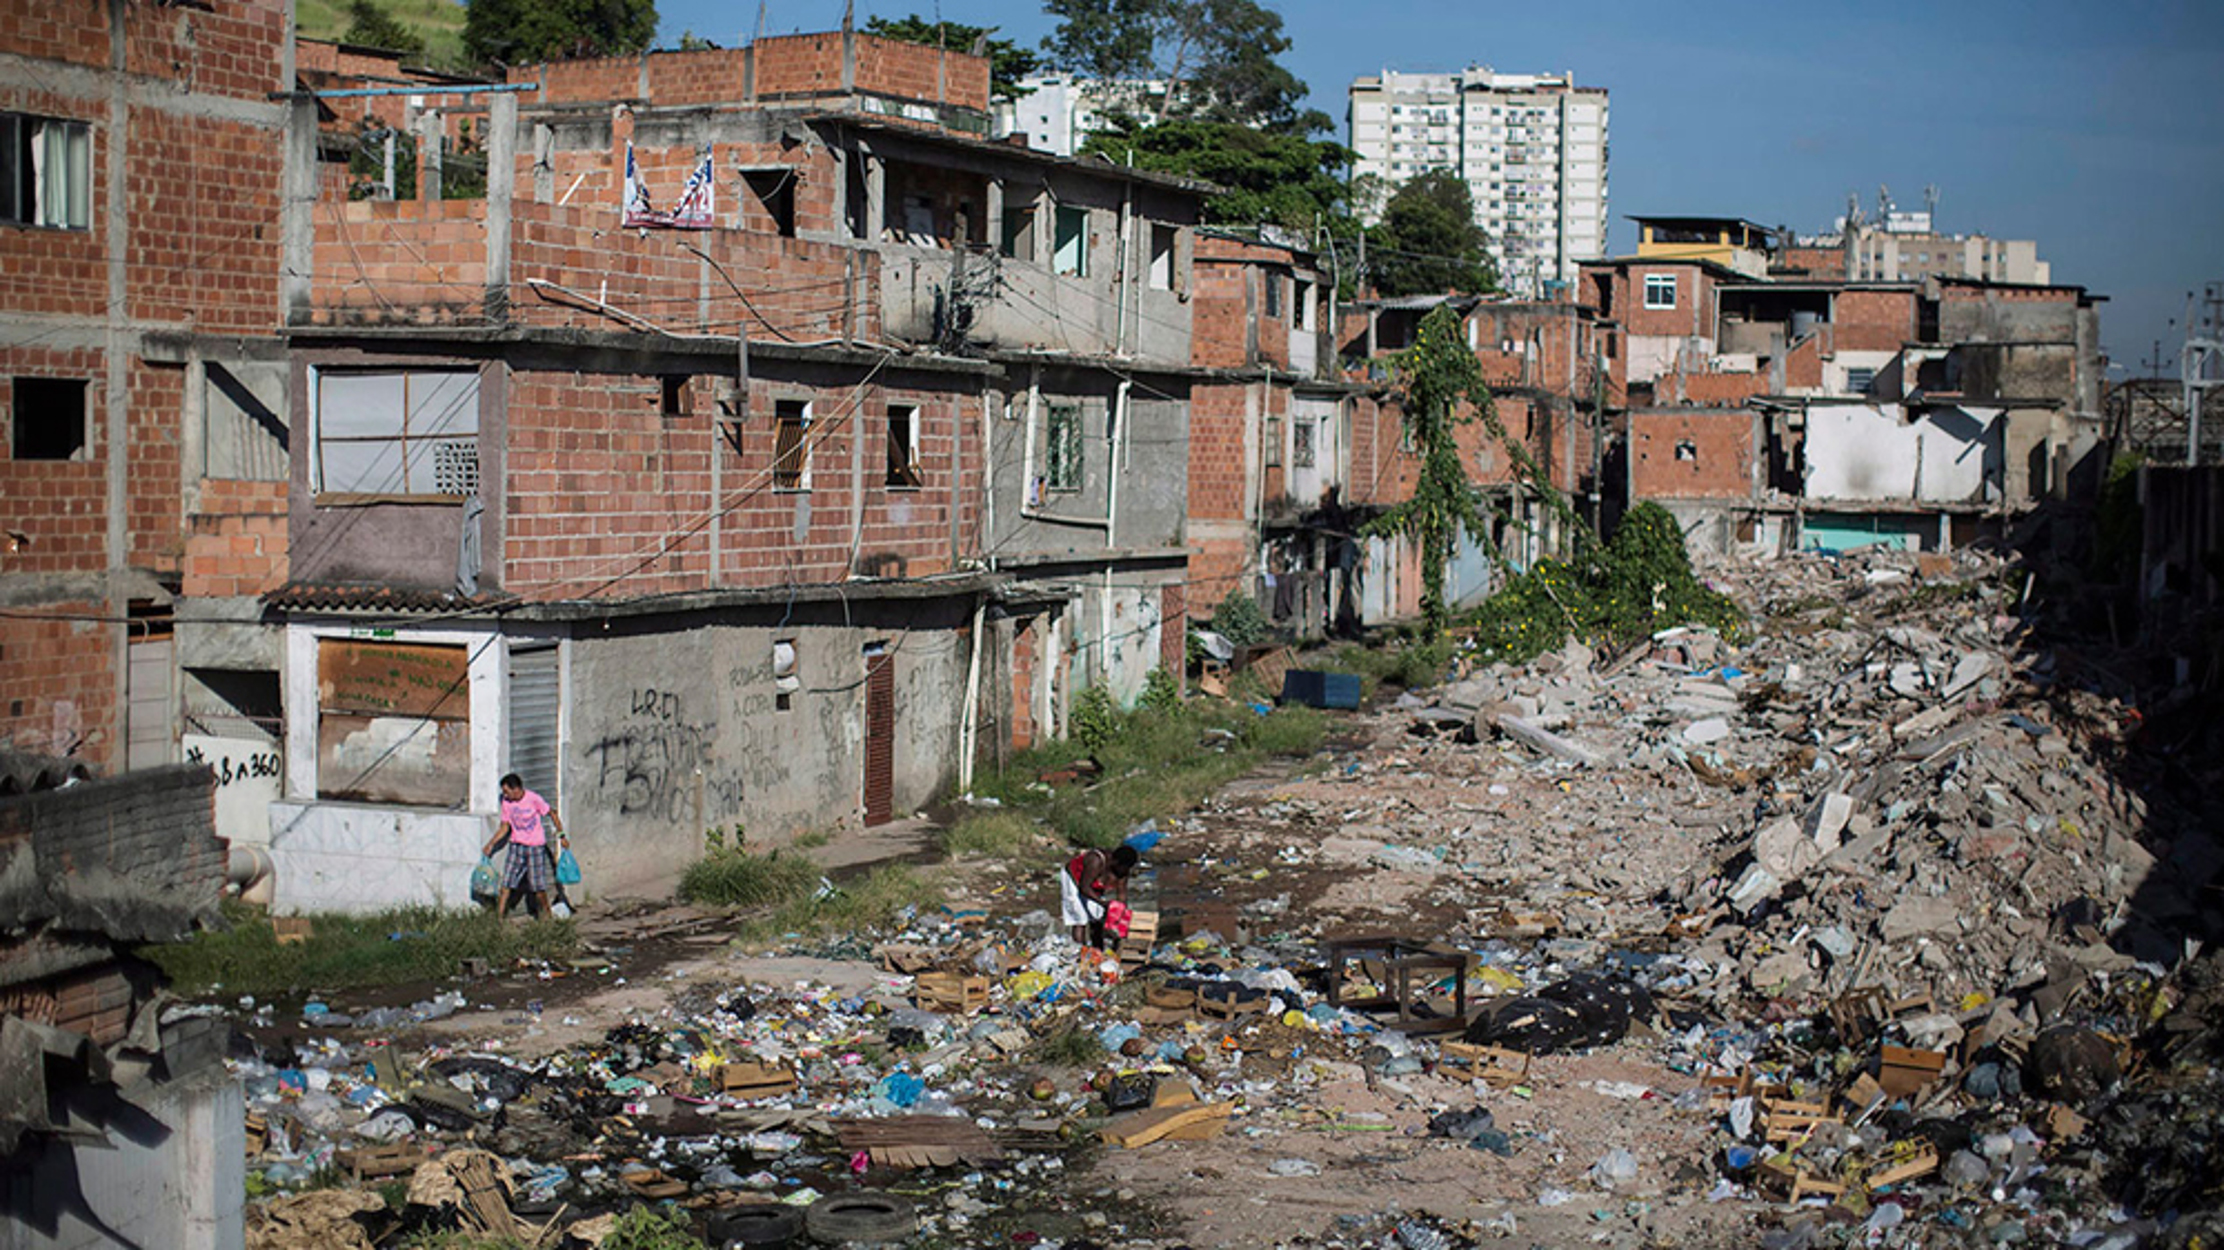 Μπολσονάρο: Είναι ψέμα το ότι πεινούν άνθρωποι στην Βραζιλία